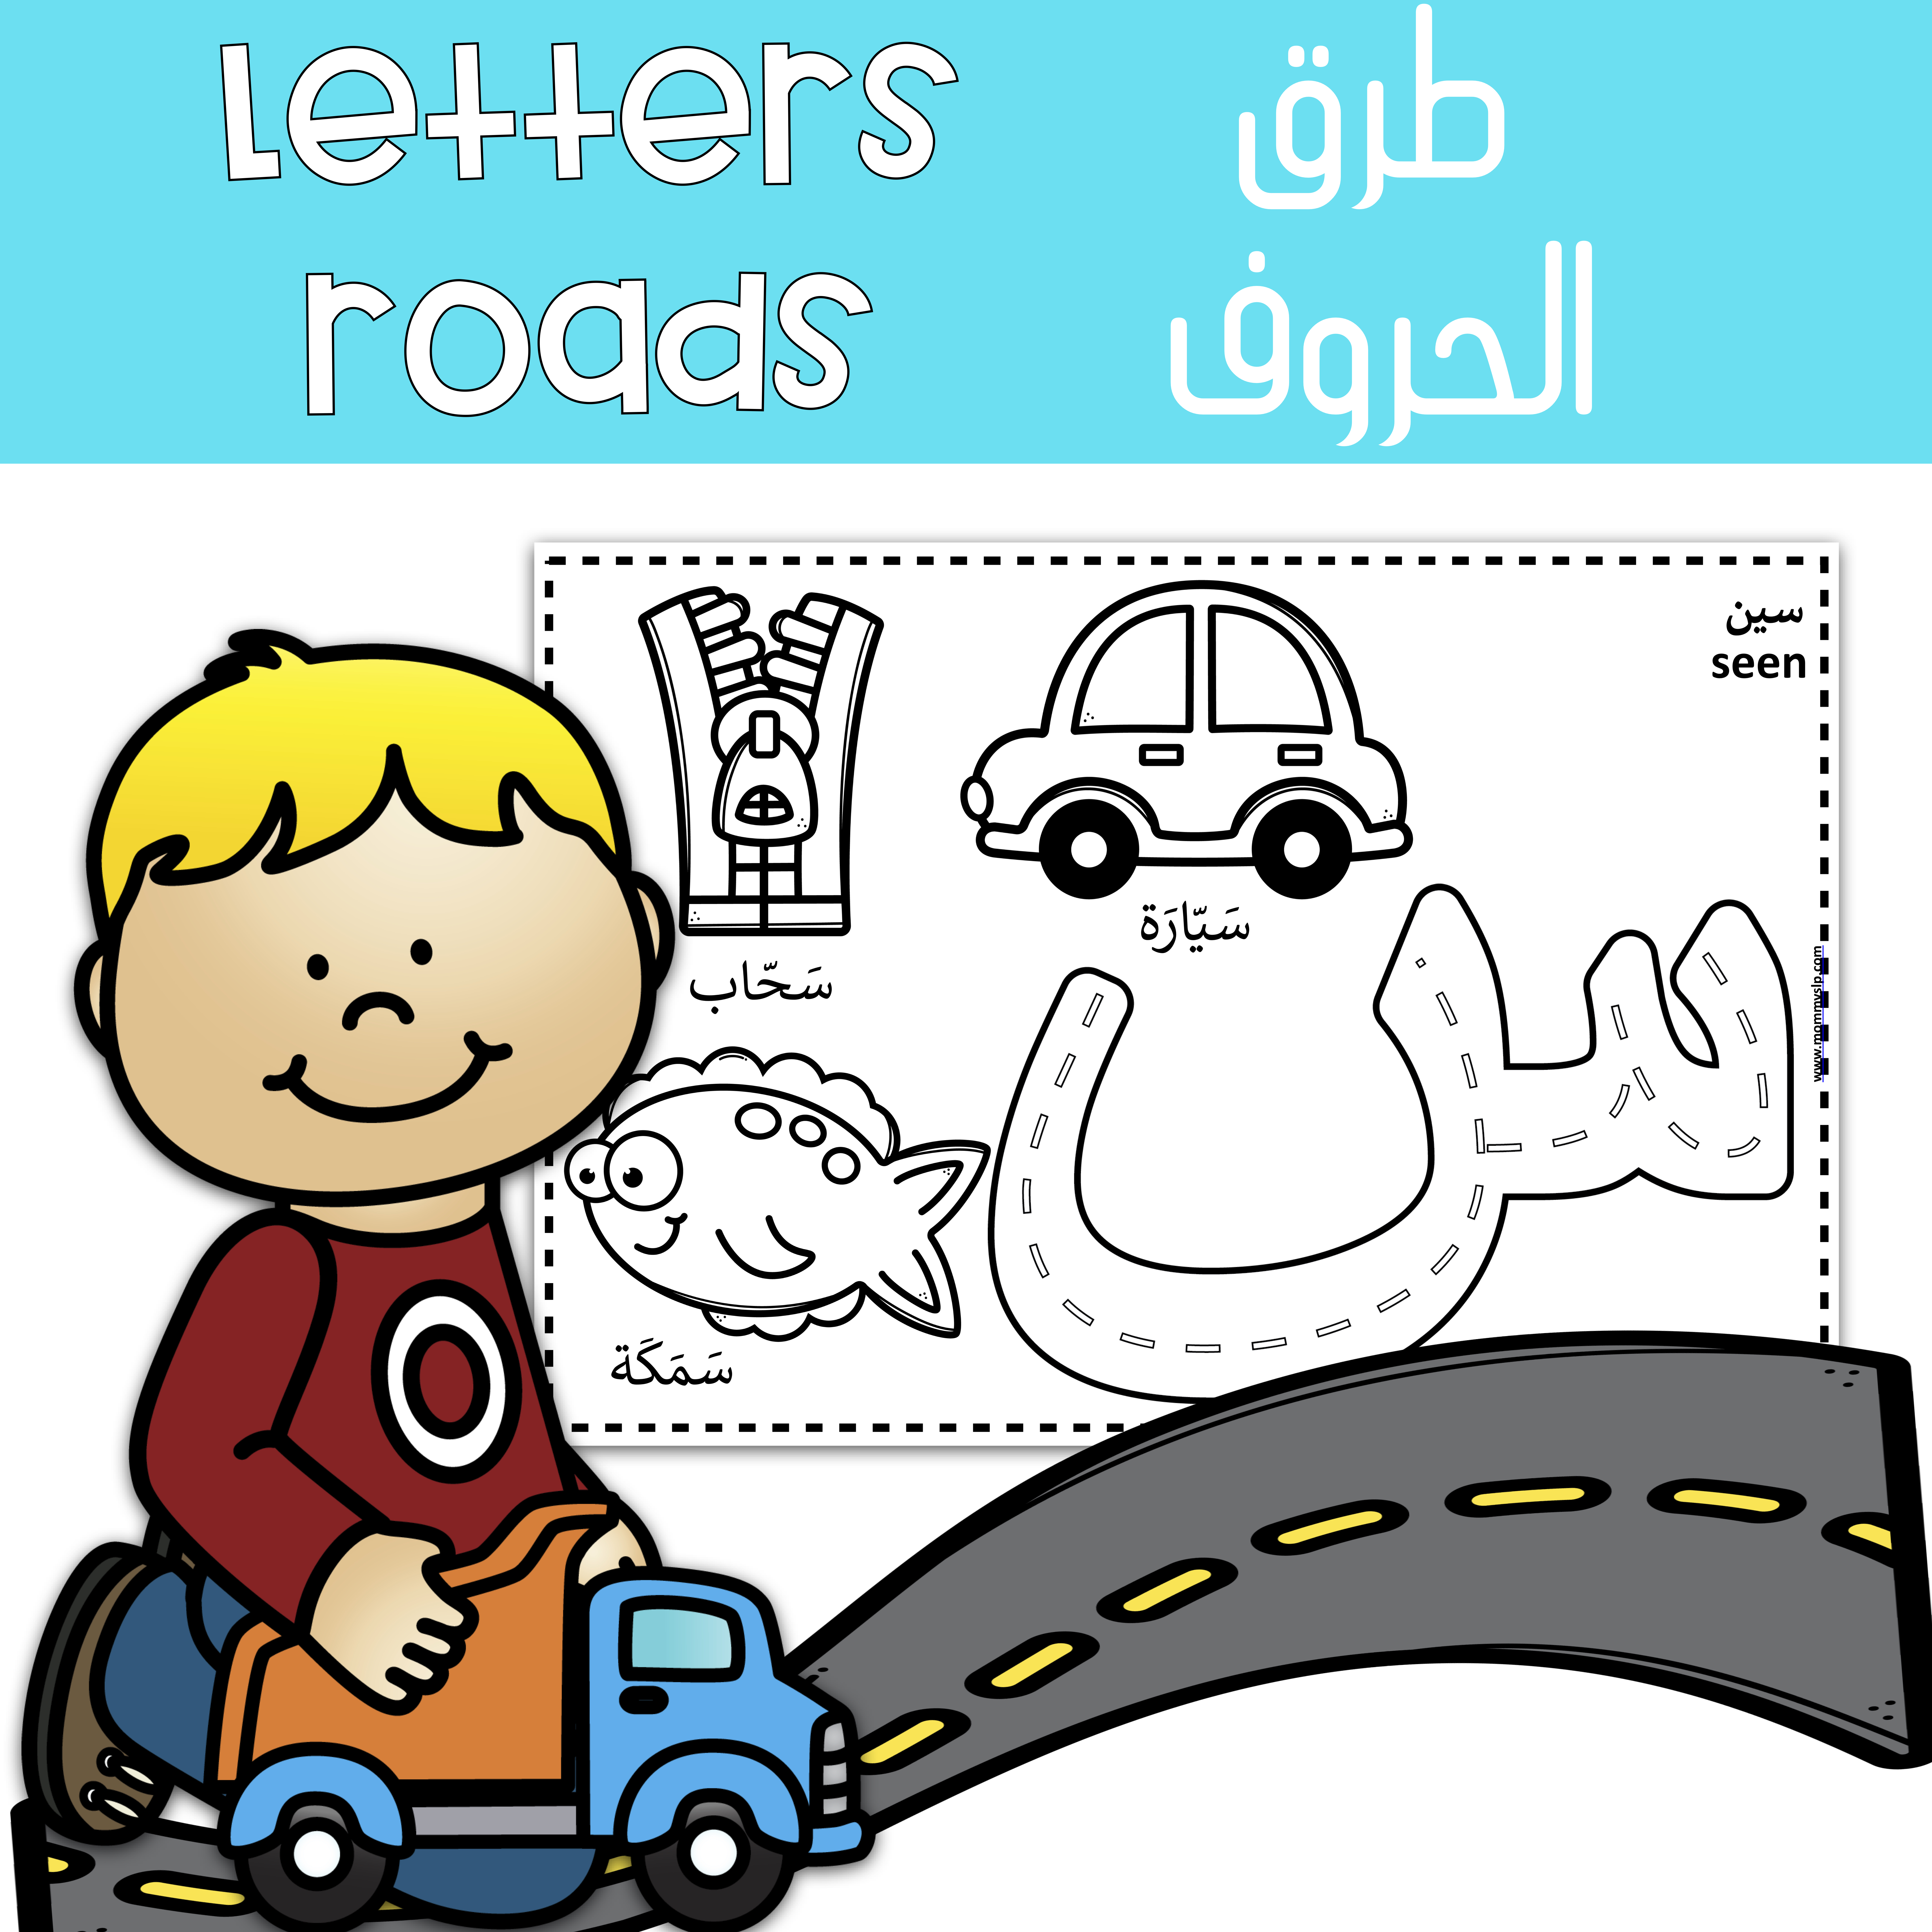 Letters-roads-in-arabic